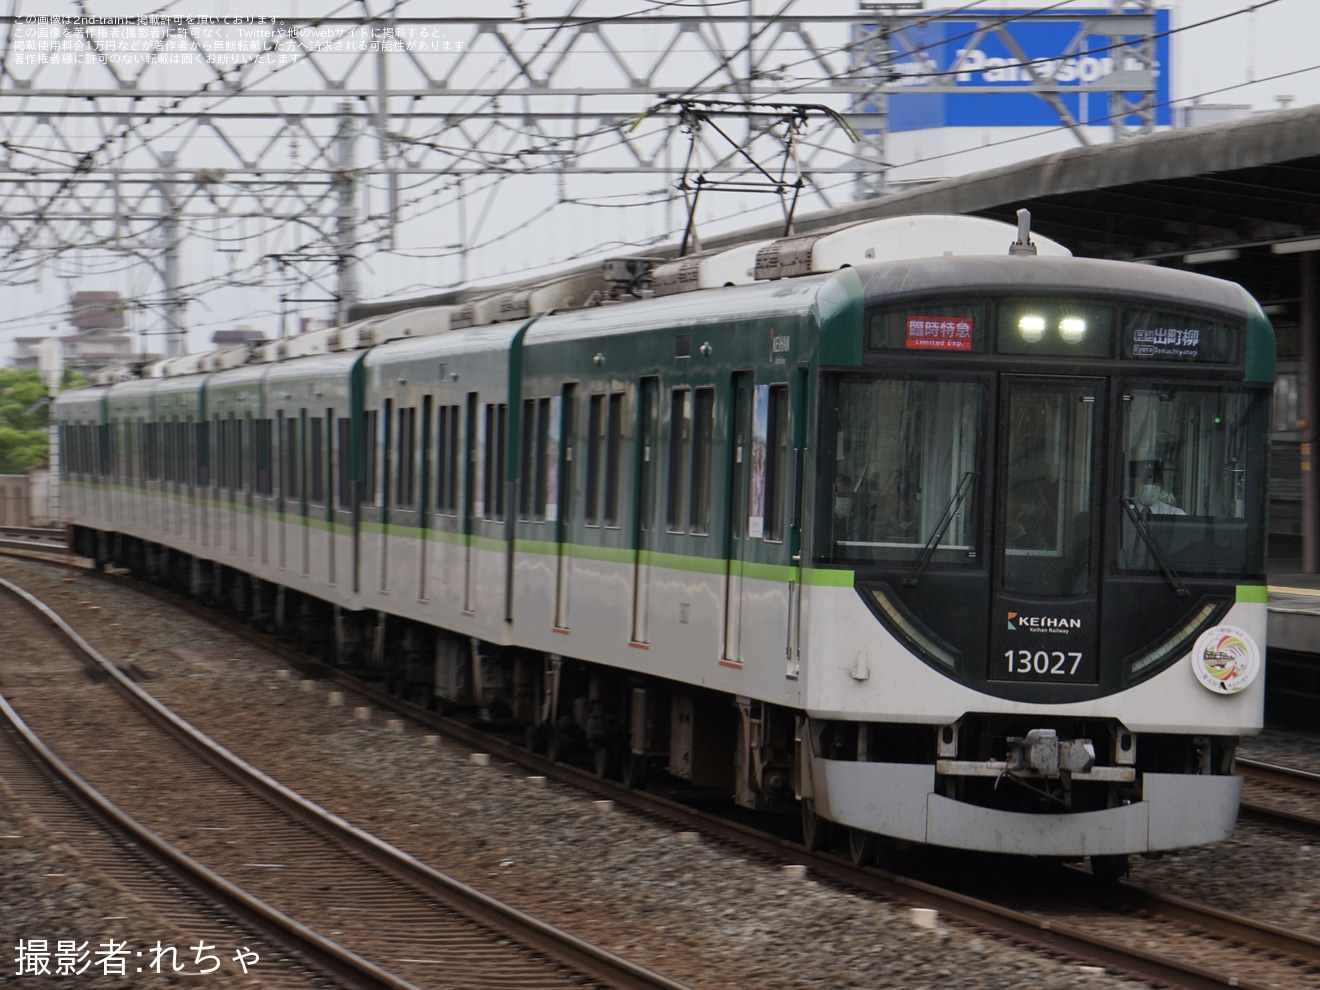 【京阪】大型連休に合わせて「通勤車臨時特急」を運行の拡大写真